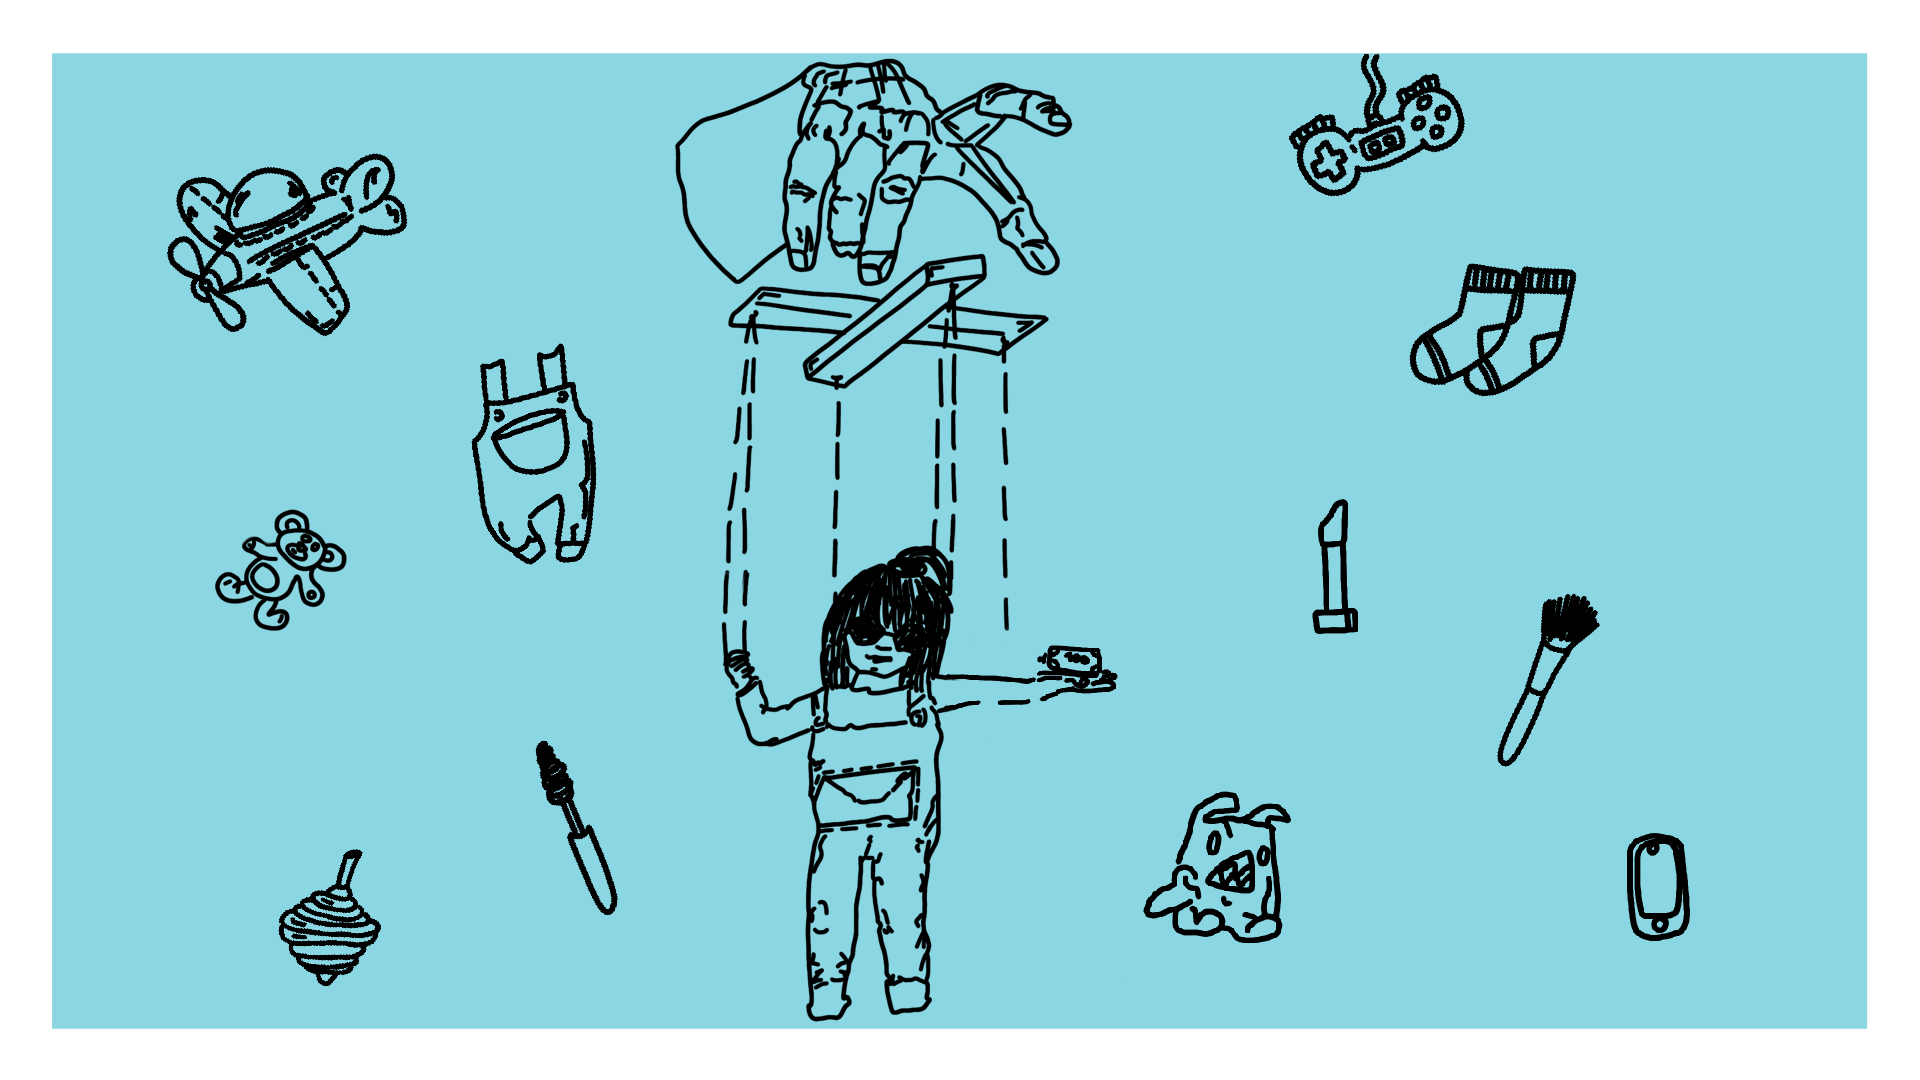 Beitragsbild - eine Hand mit einer Marionette an der ein Mädchen, darum verschiedene Gegenstände wie Socken, Pinsel, etc.